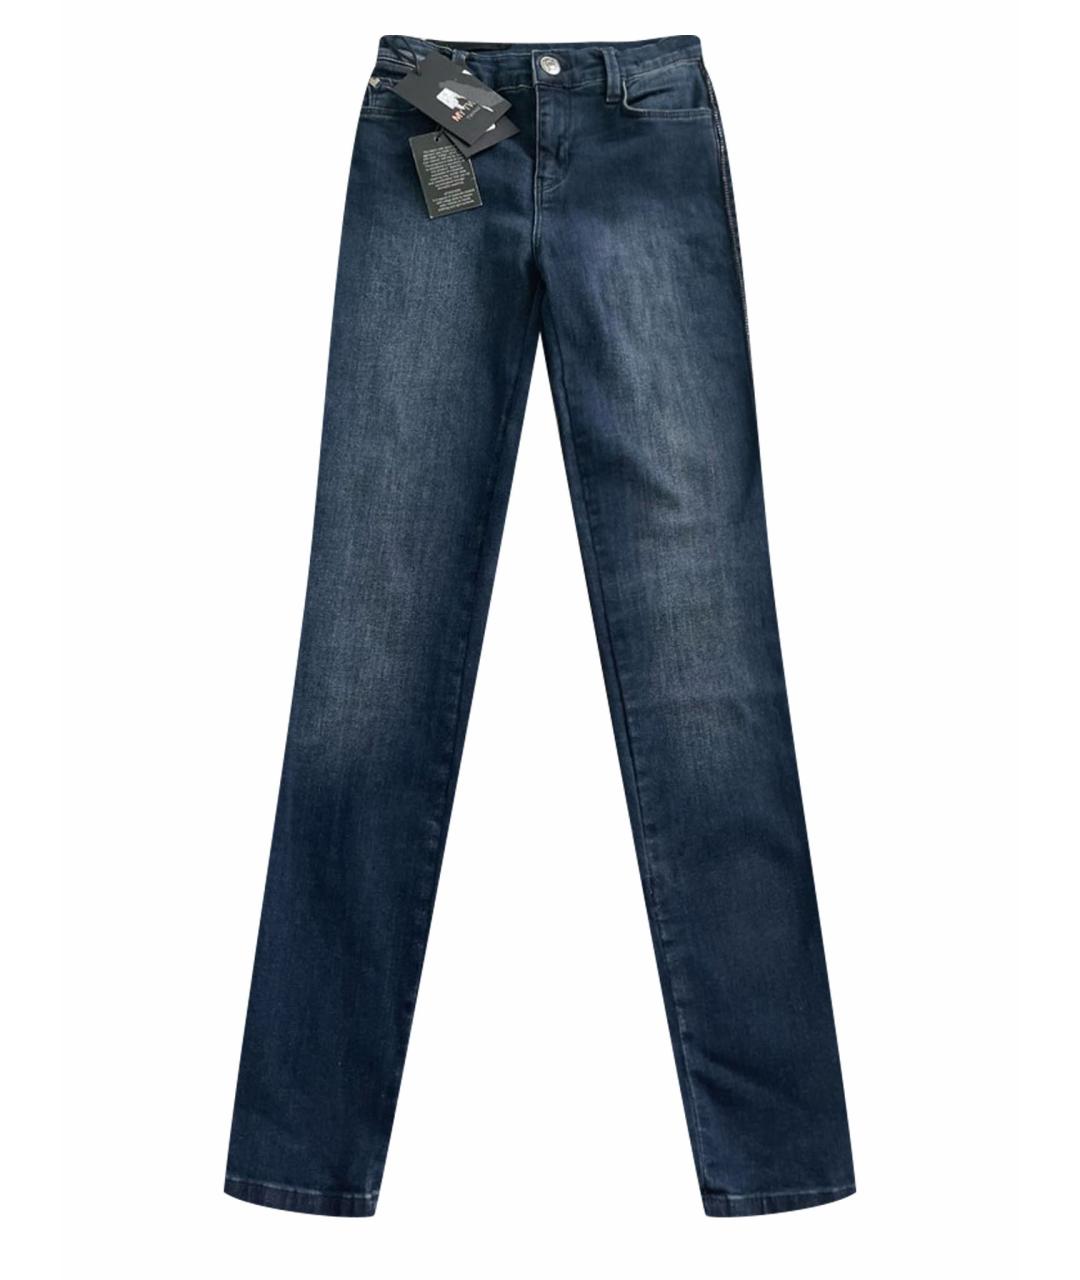 TWIN-SET Темно-синие джинсы слим, фото 1